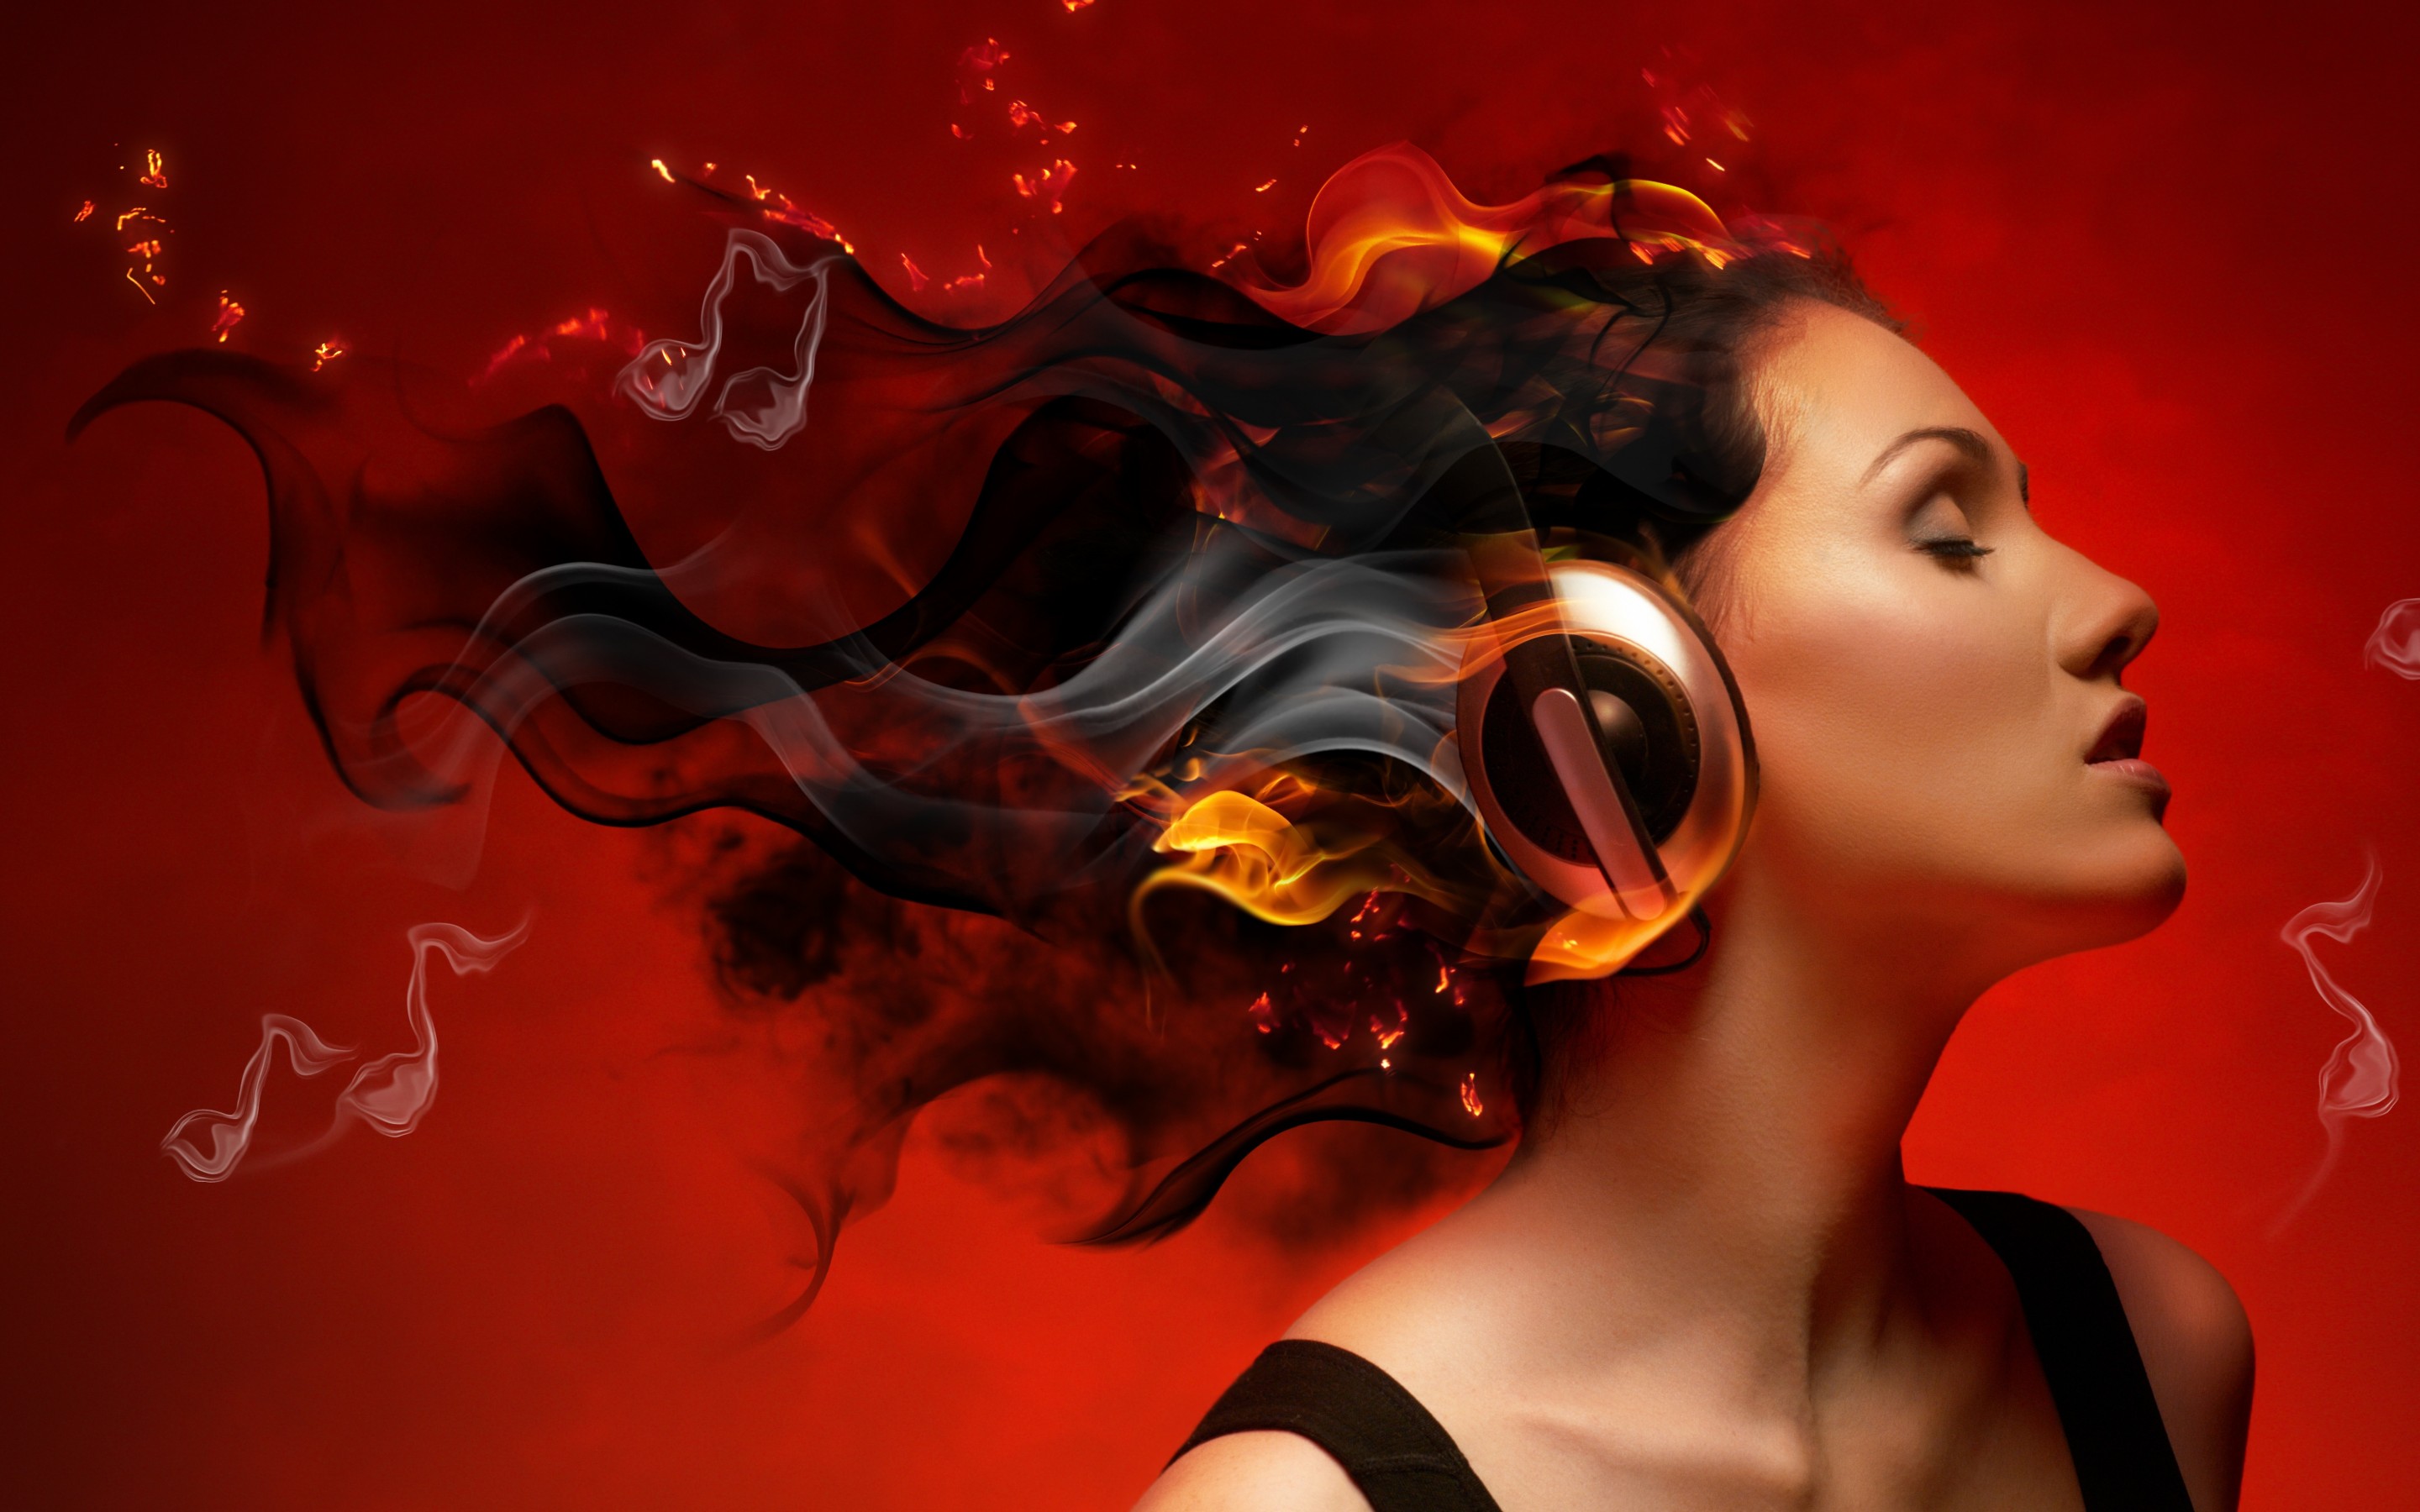 Slušanje glazbe umanjuje stres, samo treba dobro odabrati što slušati